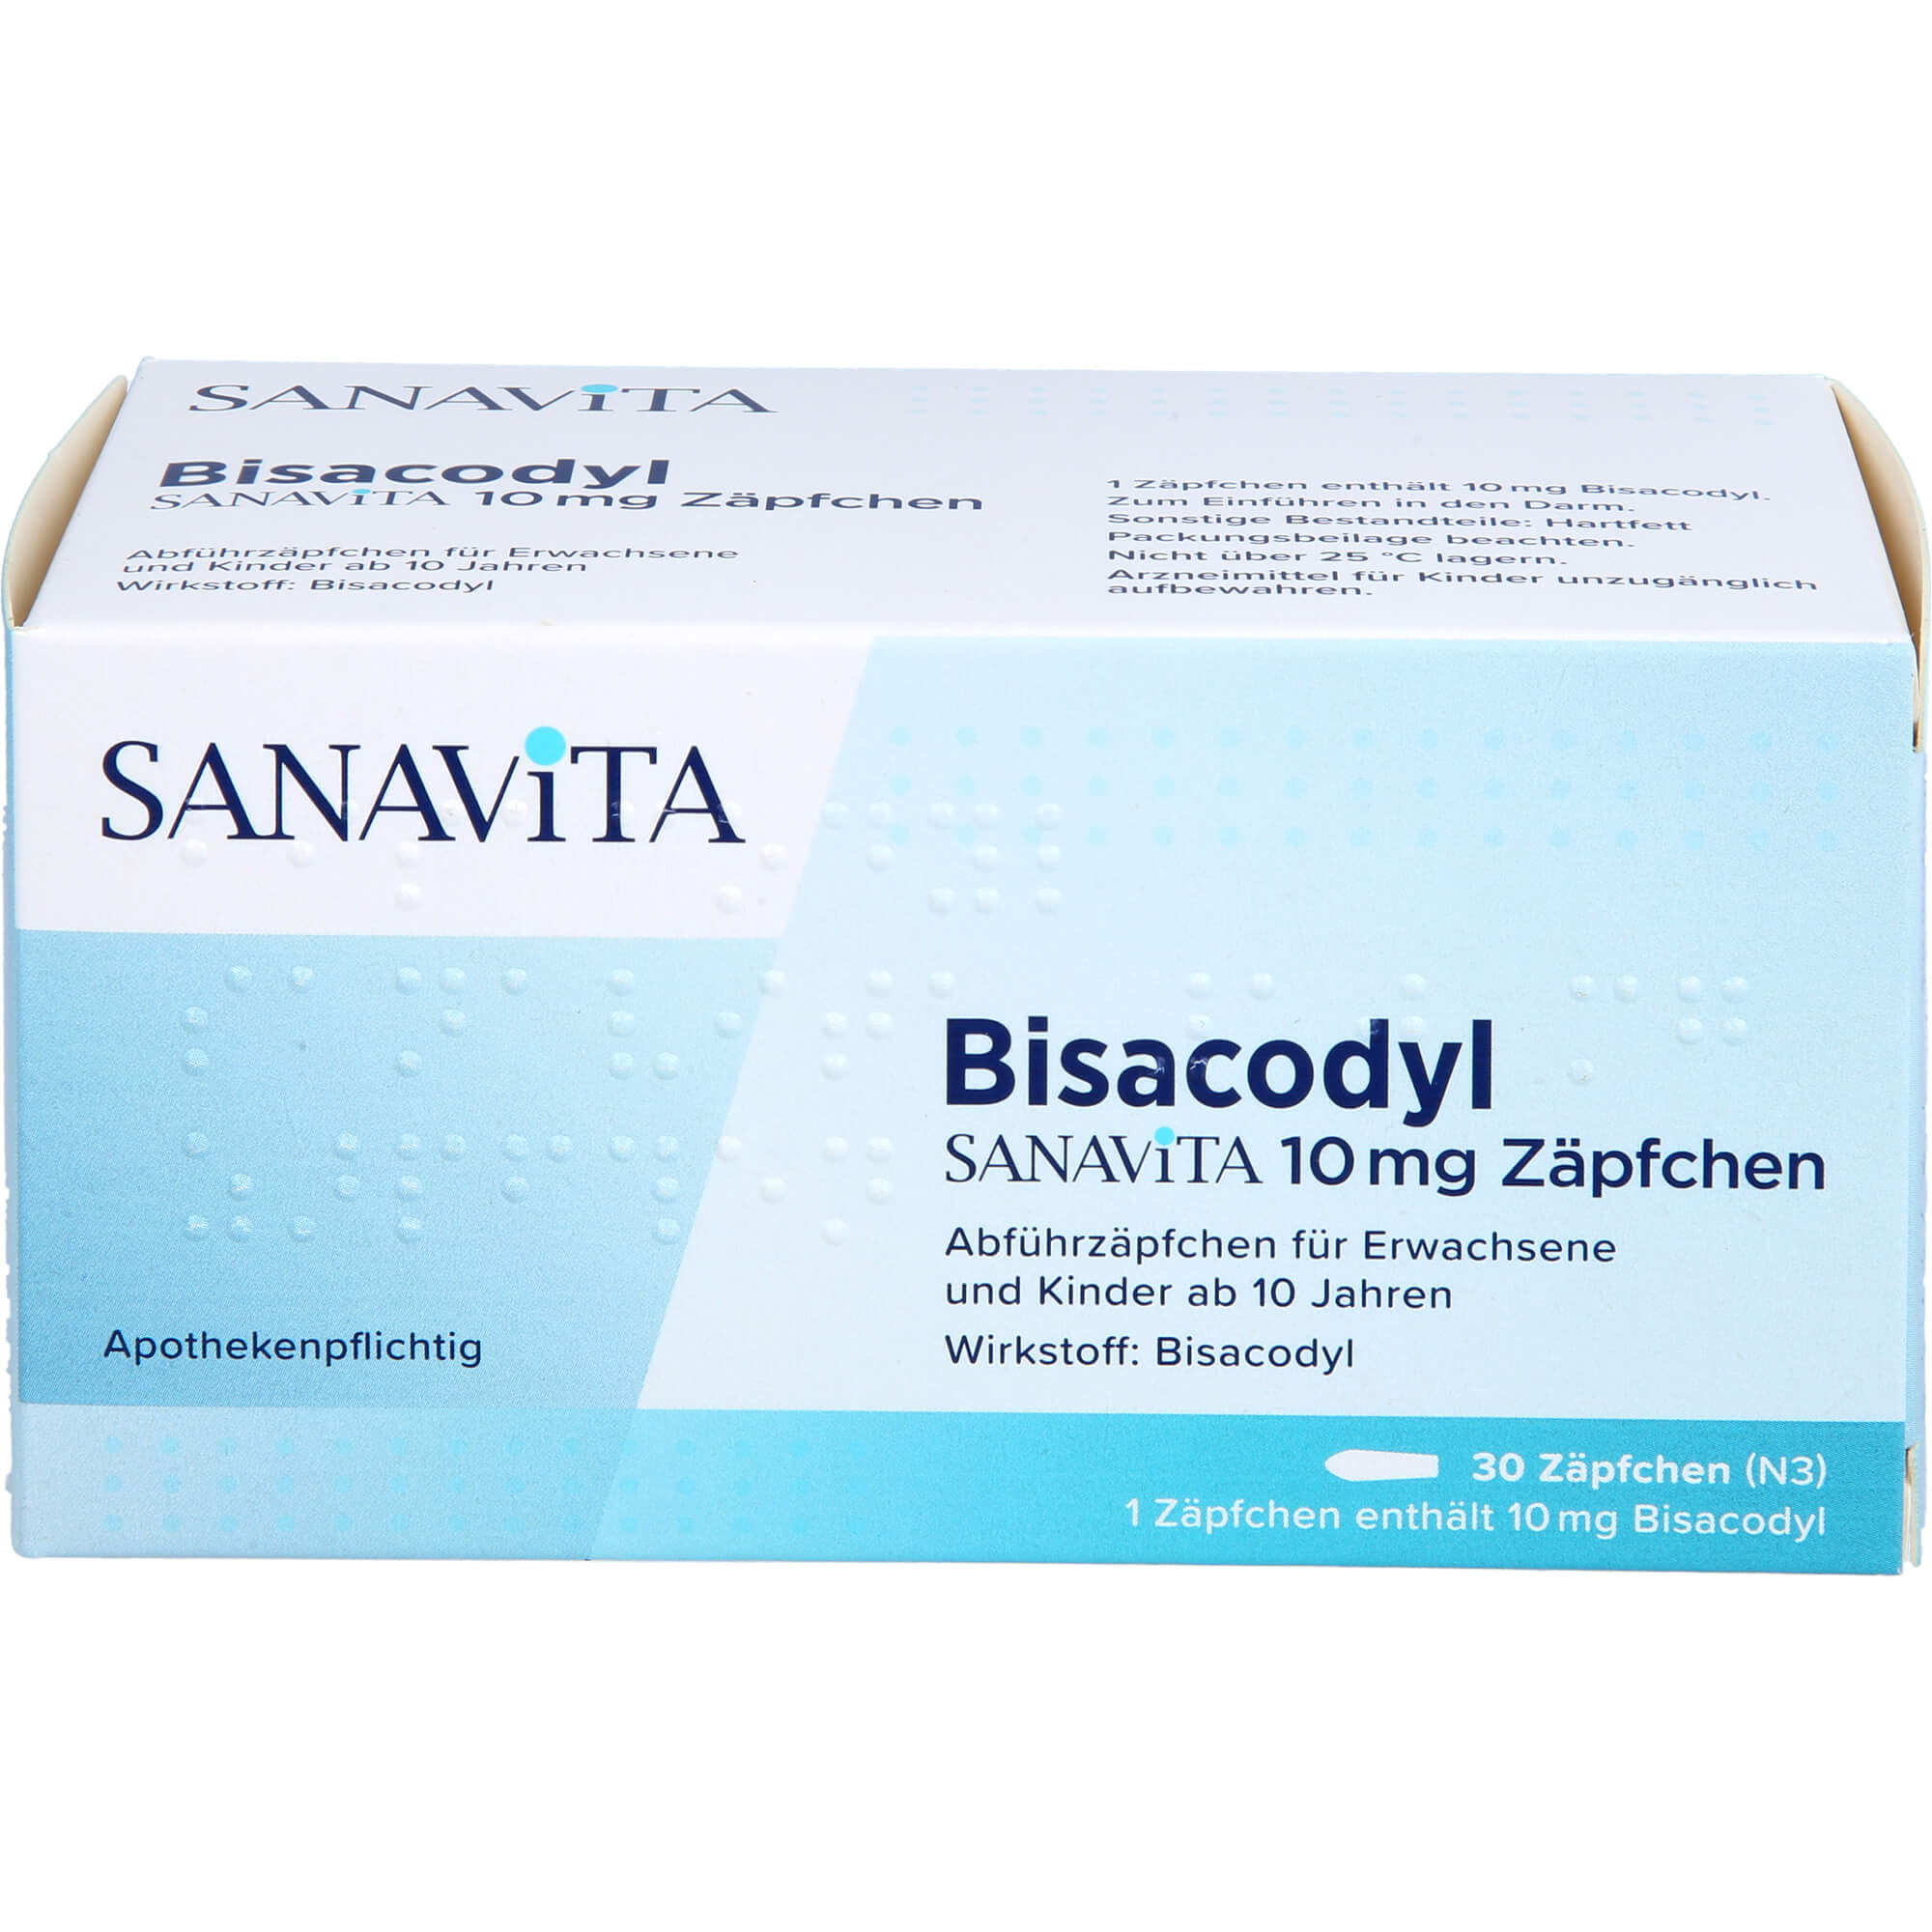 BISACODYL SANAVITA 10 mg Zäpfchen